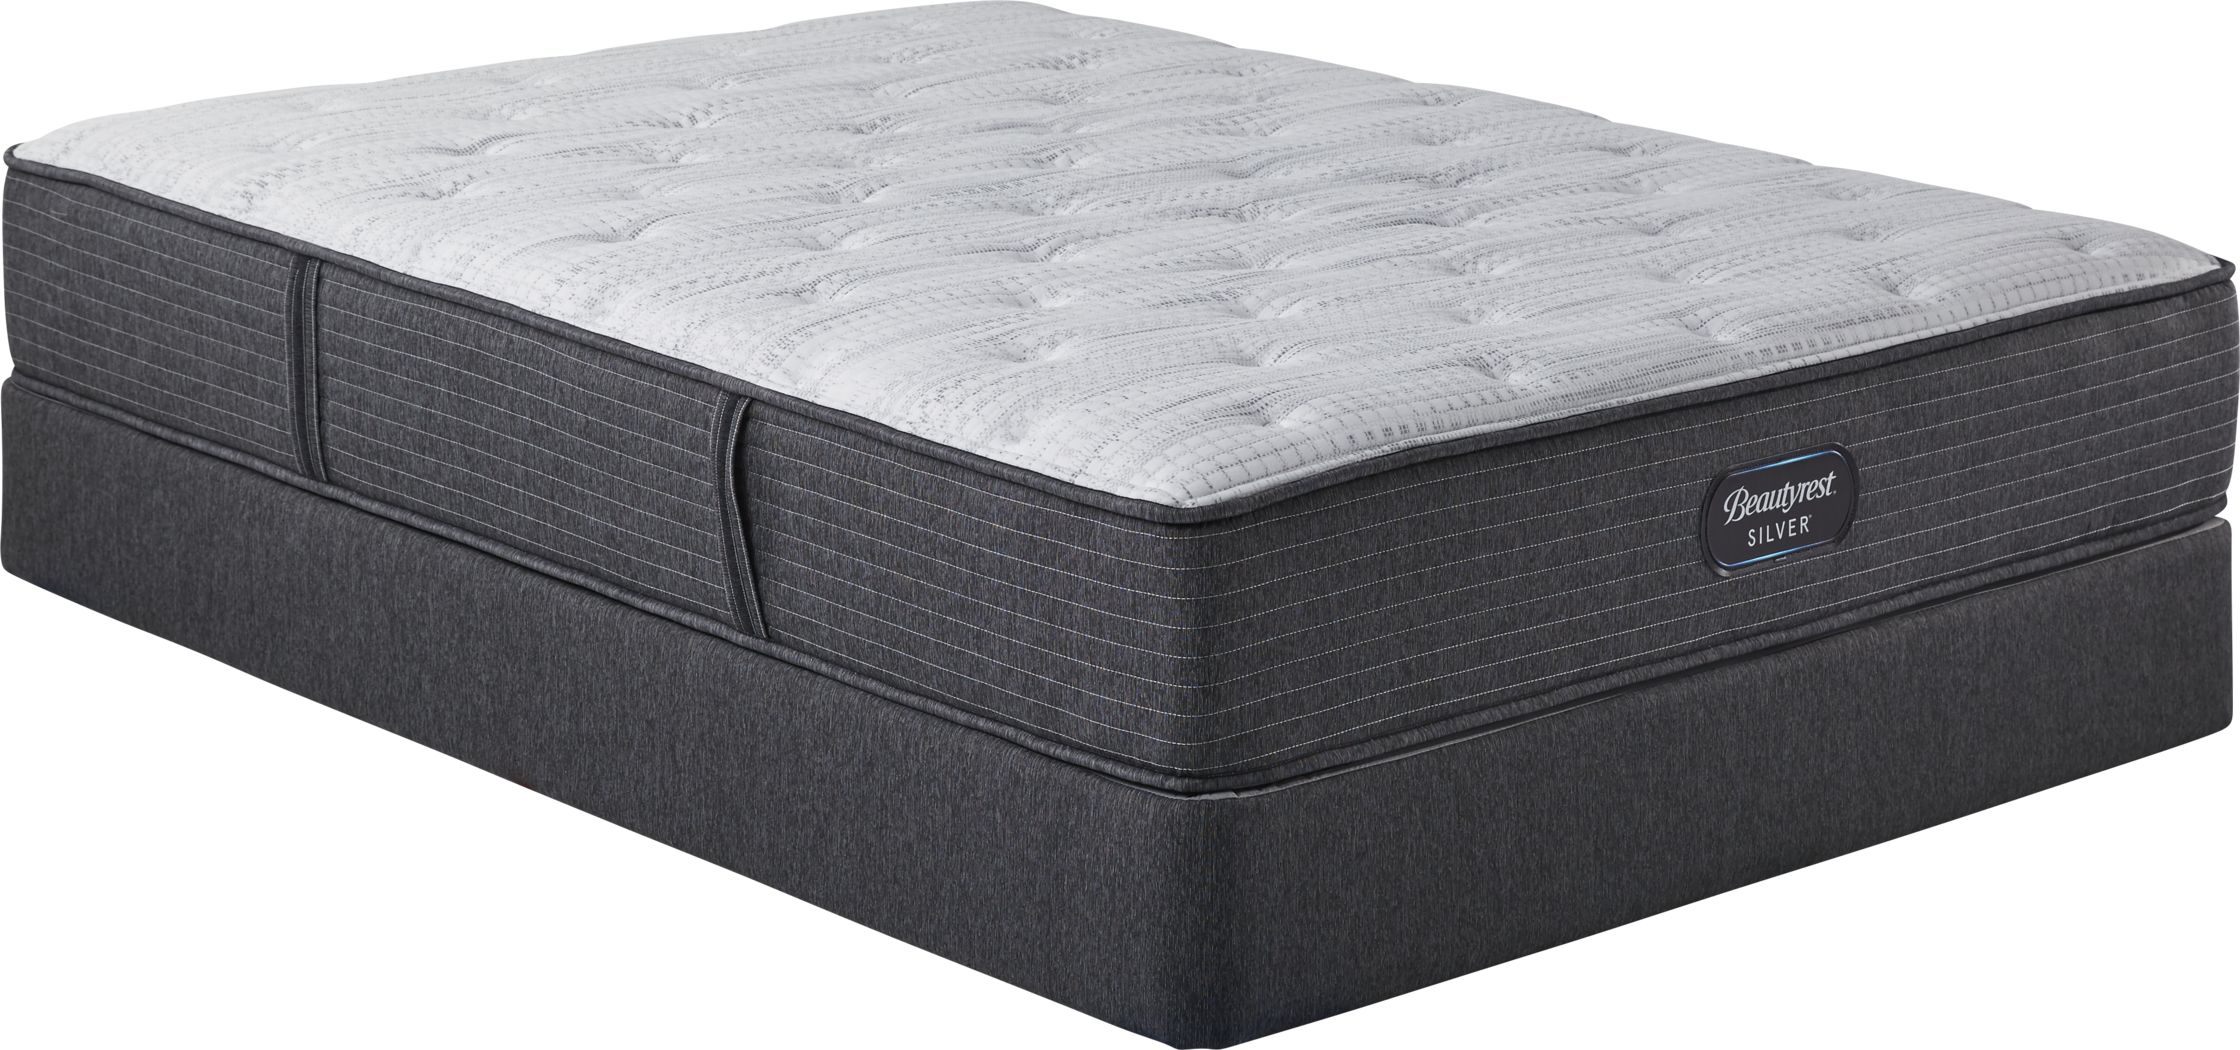 queen mattress sets sales